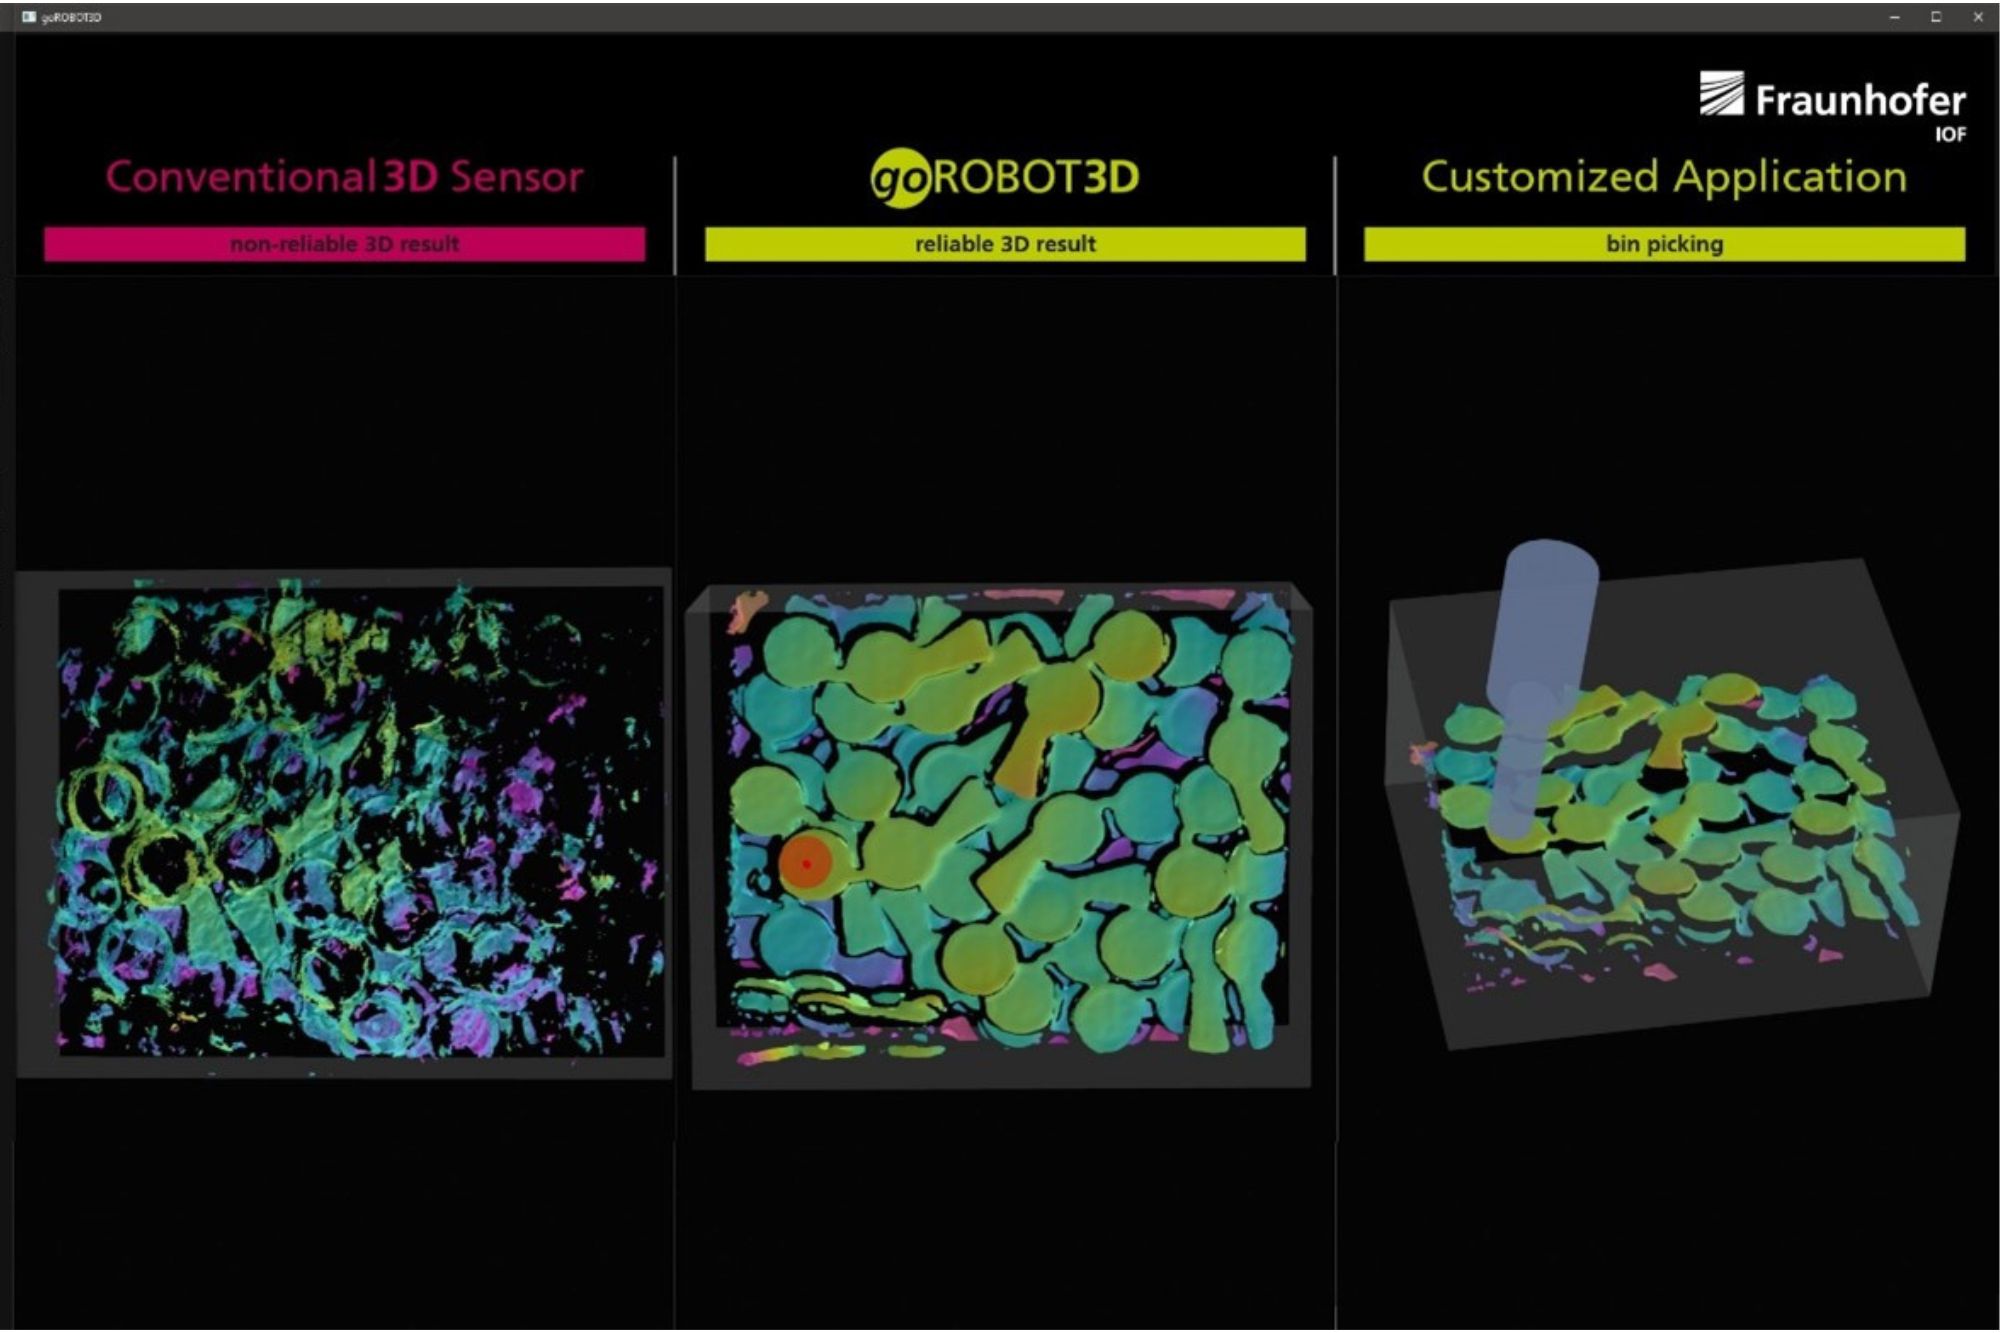 Software für die Visualisierung und Auswertung von 3D Messdaten – goROBOT3D, Thermische 3D-Sensorik für Bin-Picking Anwendung